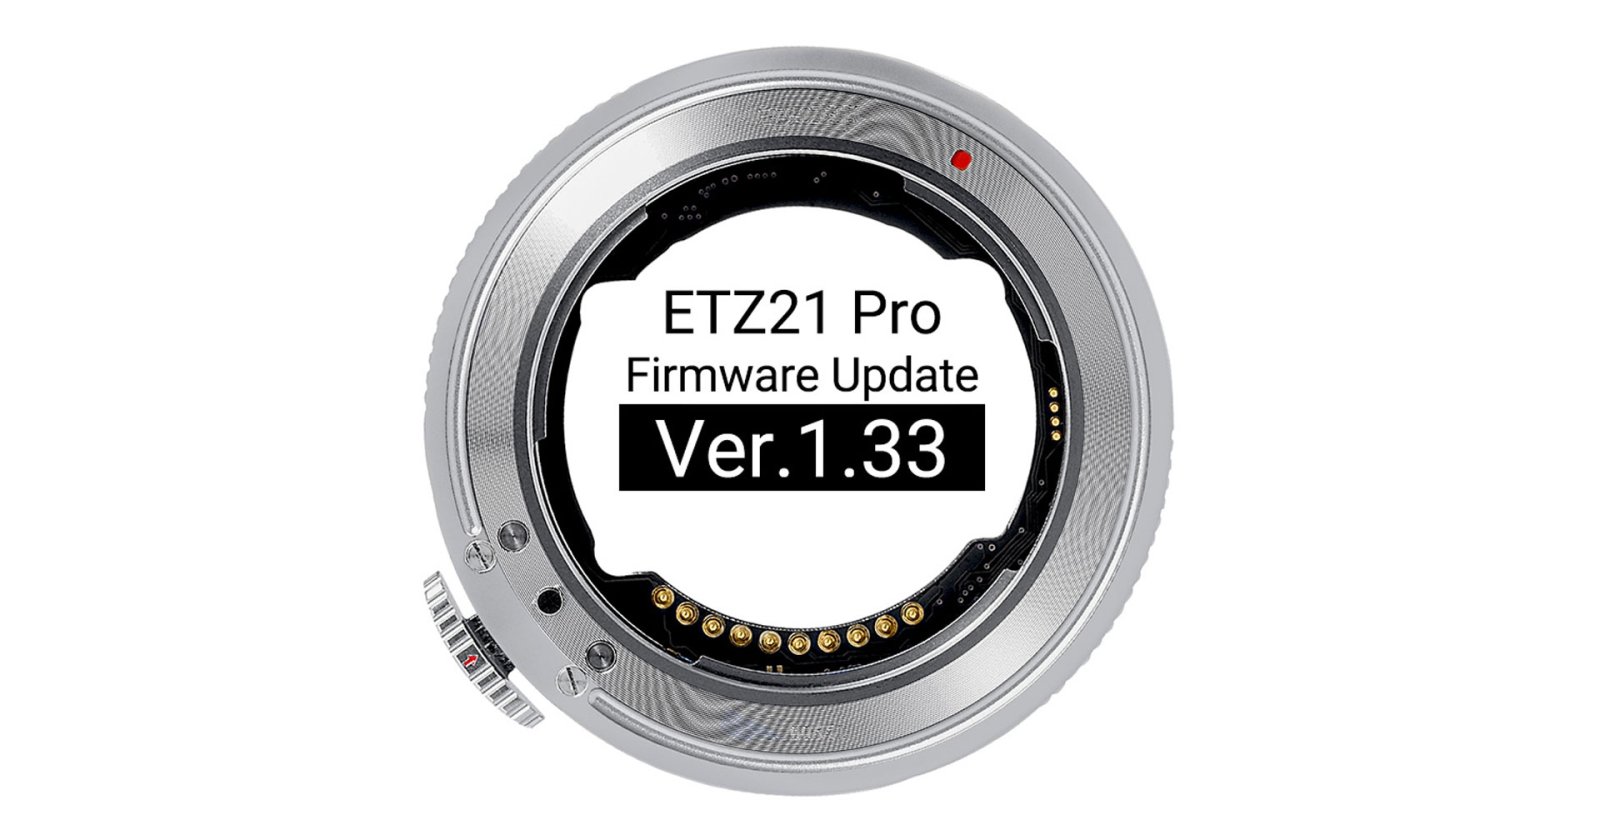 เฟิร์มแวร์ใหม่ Megadap ETZ21 Pro แก้แบตไหล ใช้งานร่วมกับเลนส์ Telephoto ได้ดีขึ้น